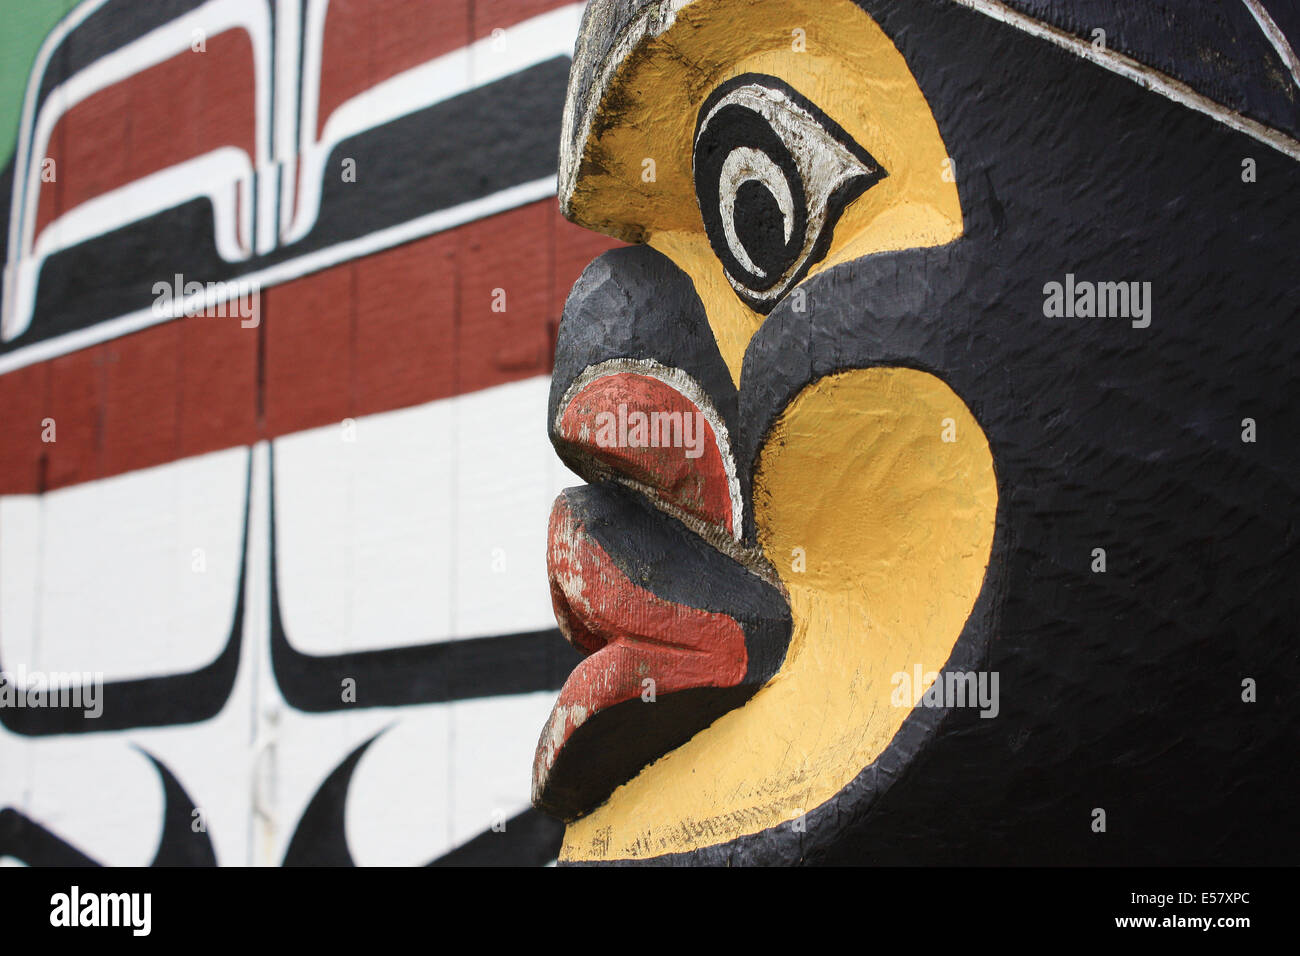 Indianer Totempfahl Gesicht, eingefangen von Seite mit Langhaus Wand im Hintergrund (lackiert) Stockfoto